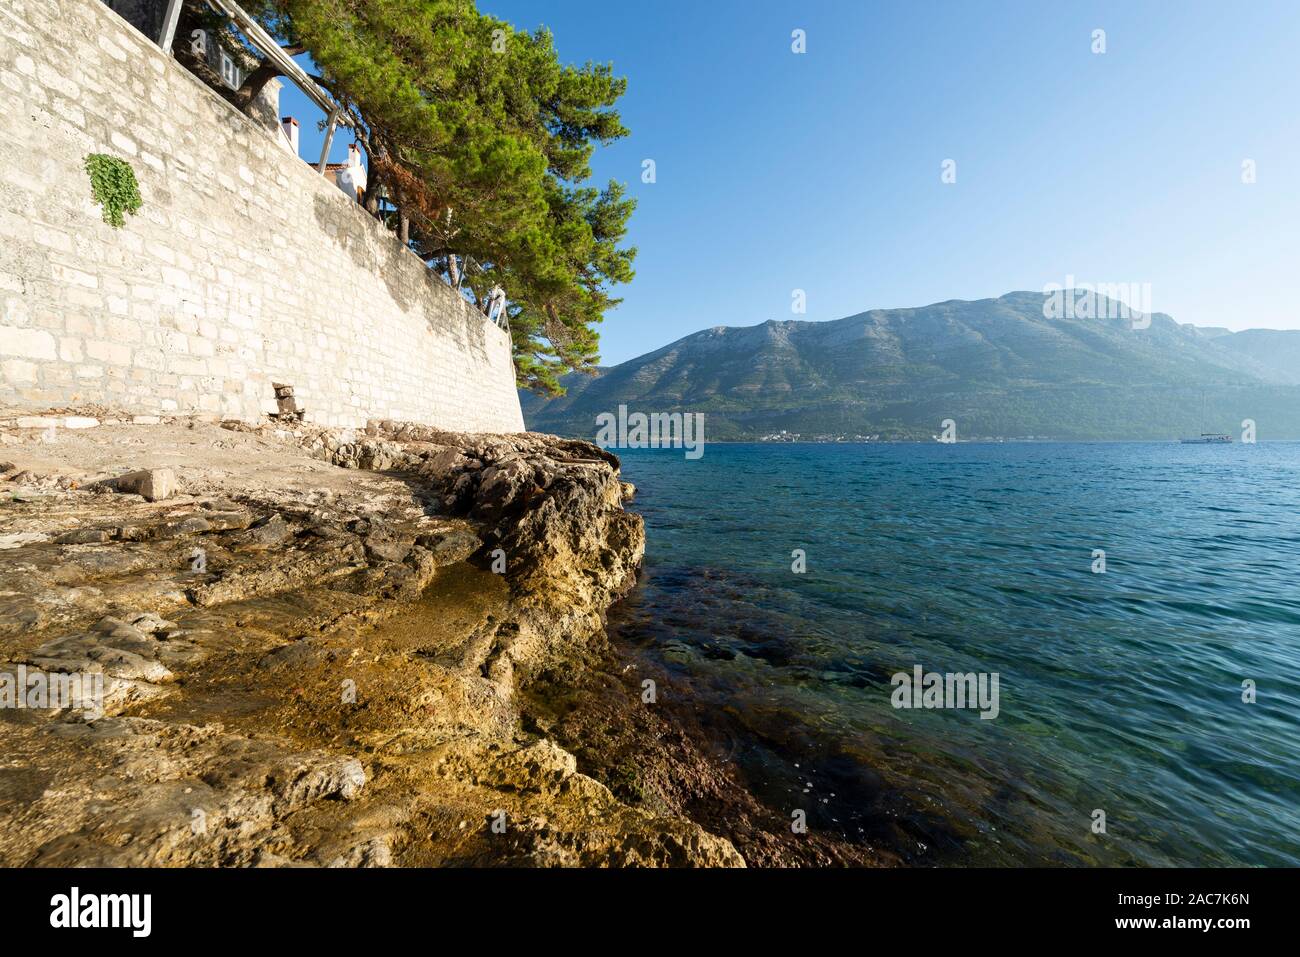 Roches sur l'eau en dessous du mur de la ville de Korcula avec vue sur la mer et les montagnes de Peljesac, Dalmatie, Croatie Banque D'Images